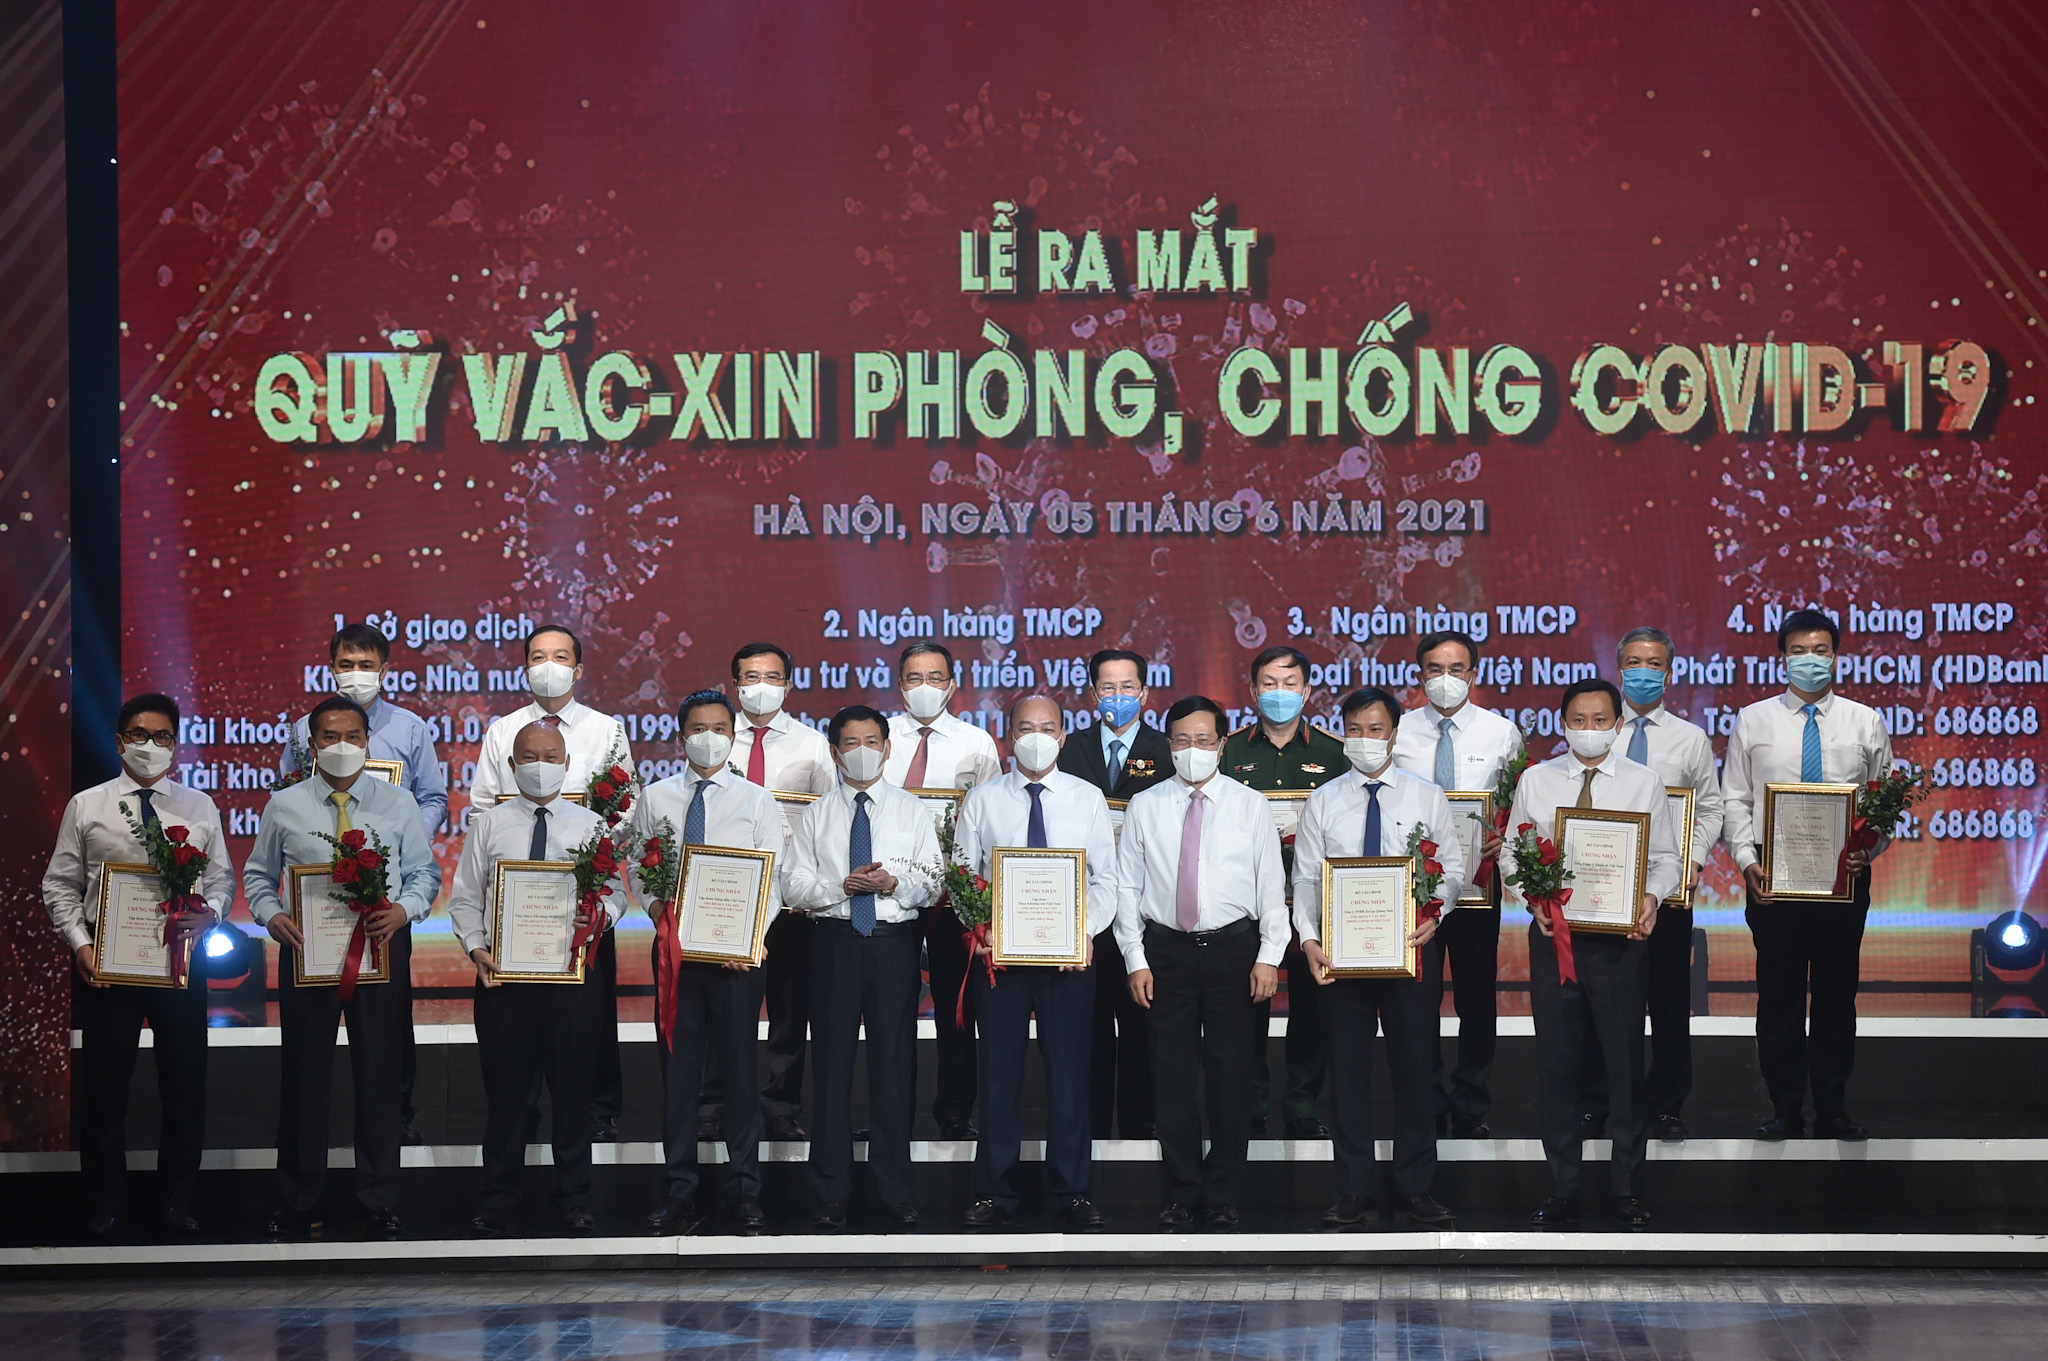 Phó Thủ tướng Phạm Bình Minh, Bộ trưởng Bộ Tài chính Hồ Đức Phớc và đại diện bộ ngành,  DN đóng góp cho Quỹ vaccine phòng chống COVID-19.